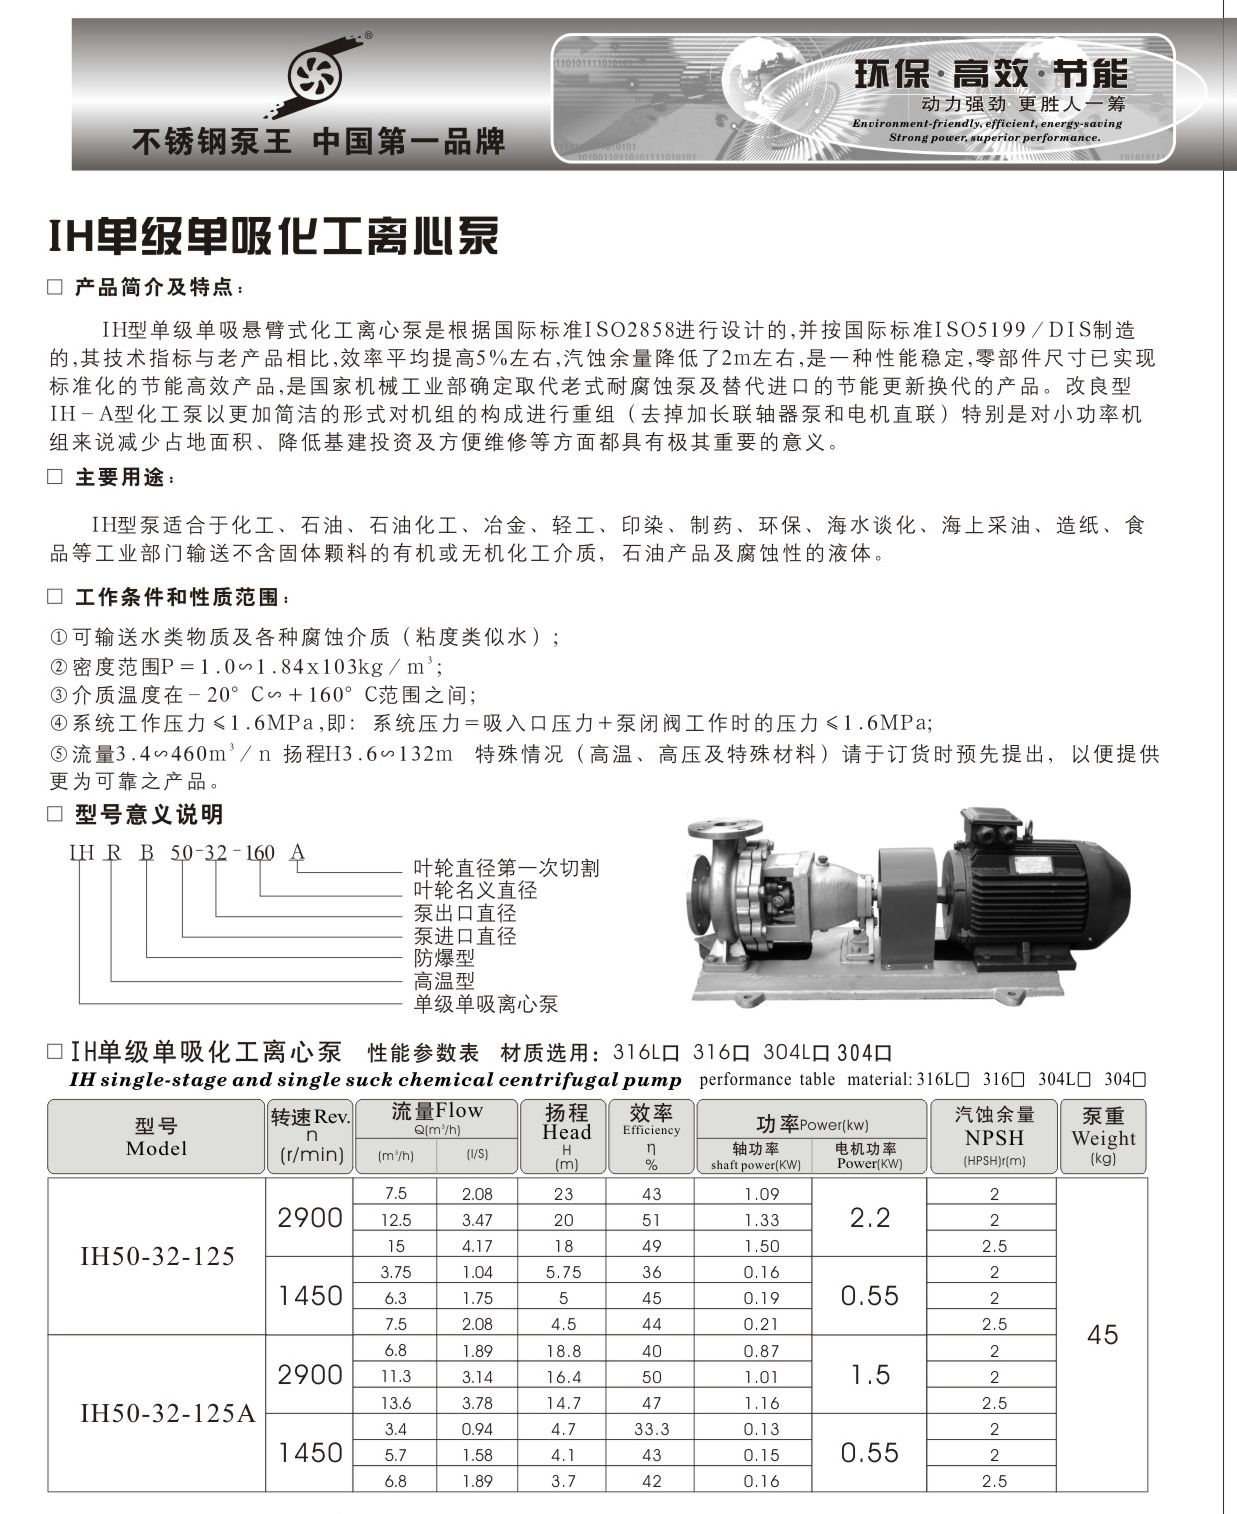 羊城水泵|IH125-100-250 |H单级单吸化工离心泵|羊城泵业|羊城泵业